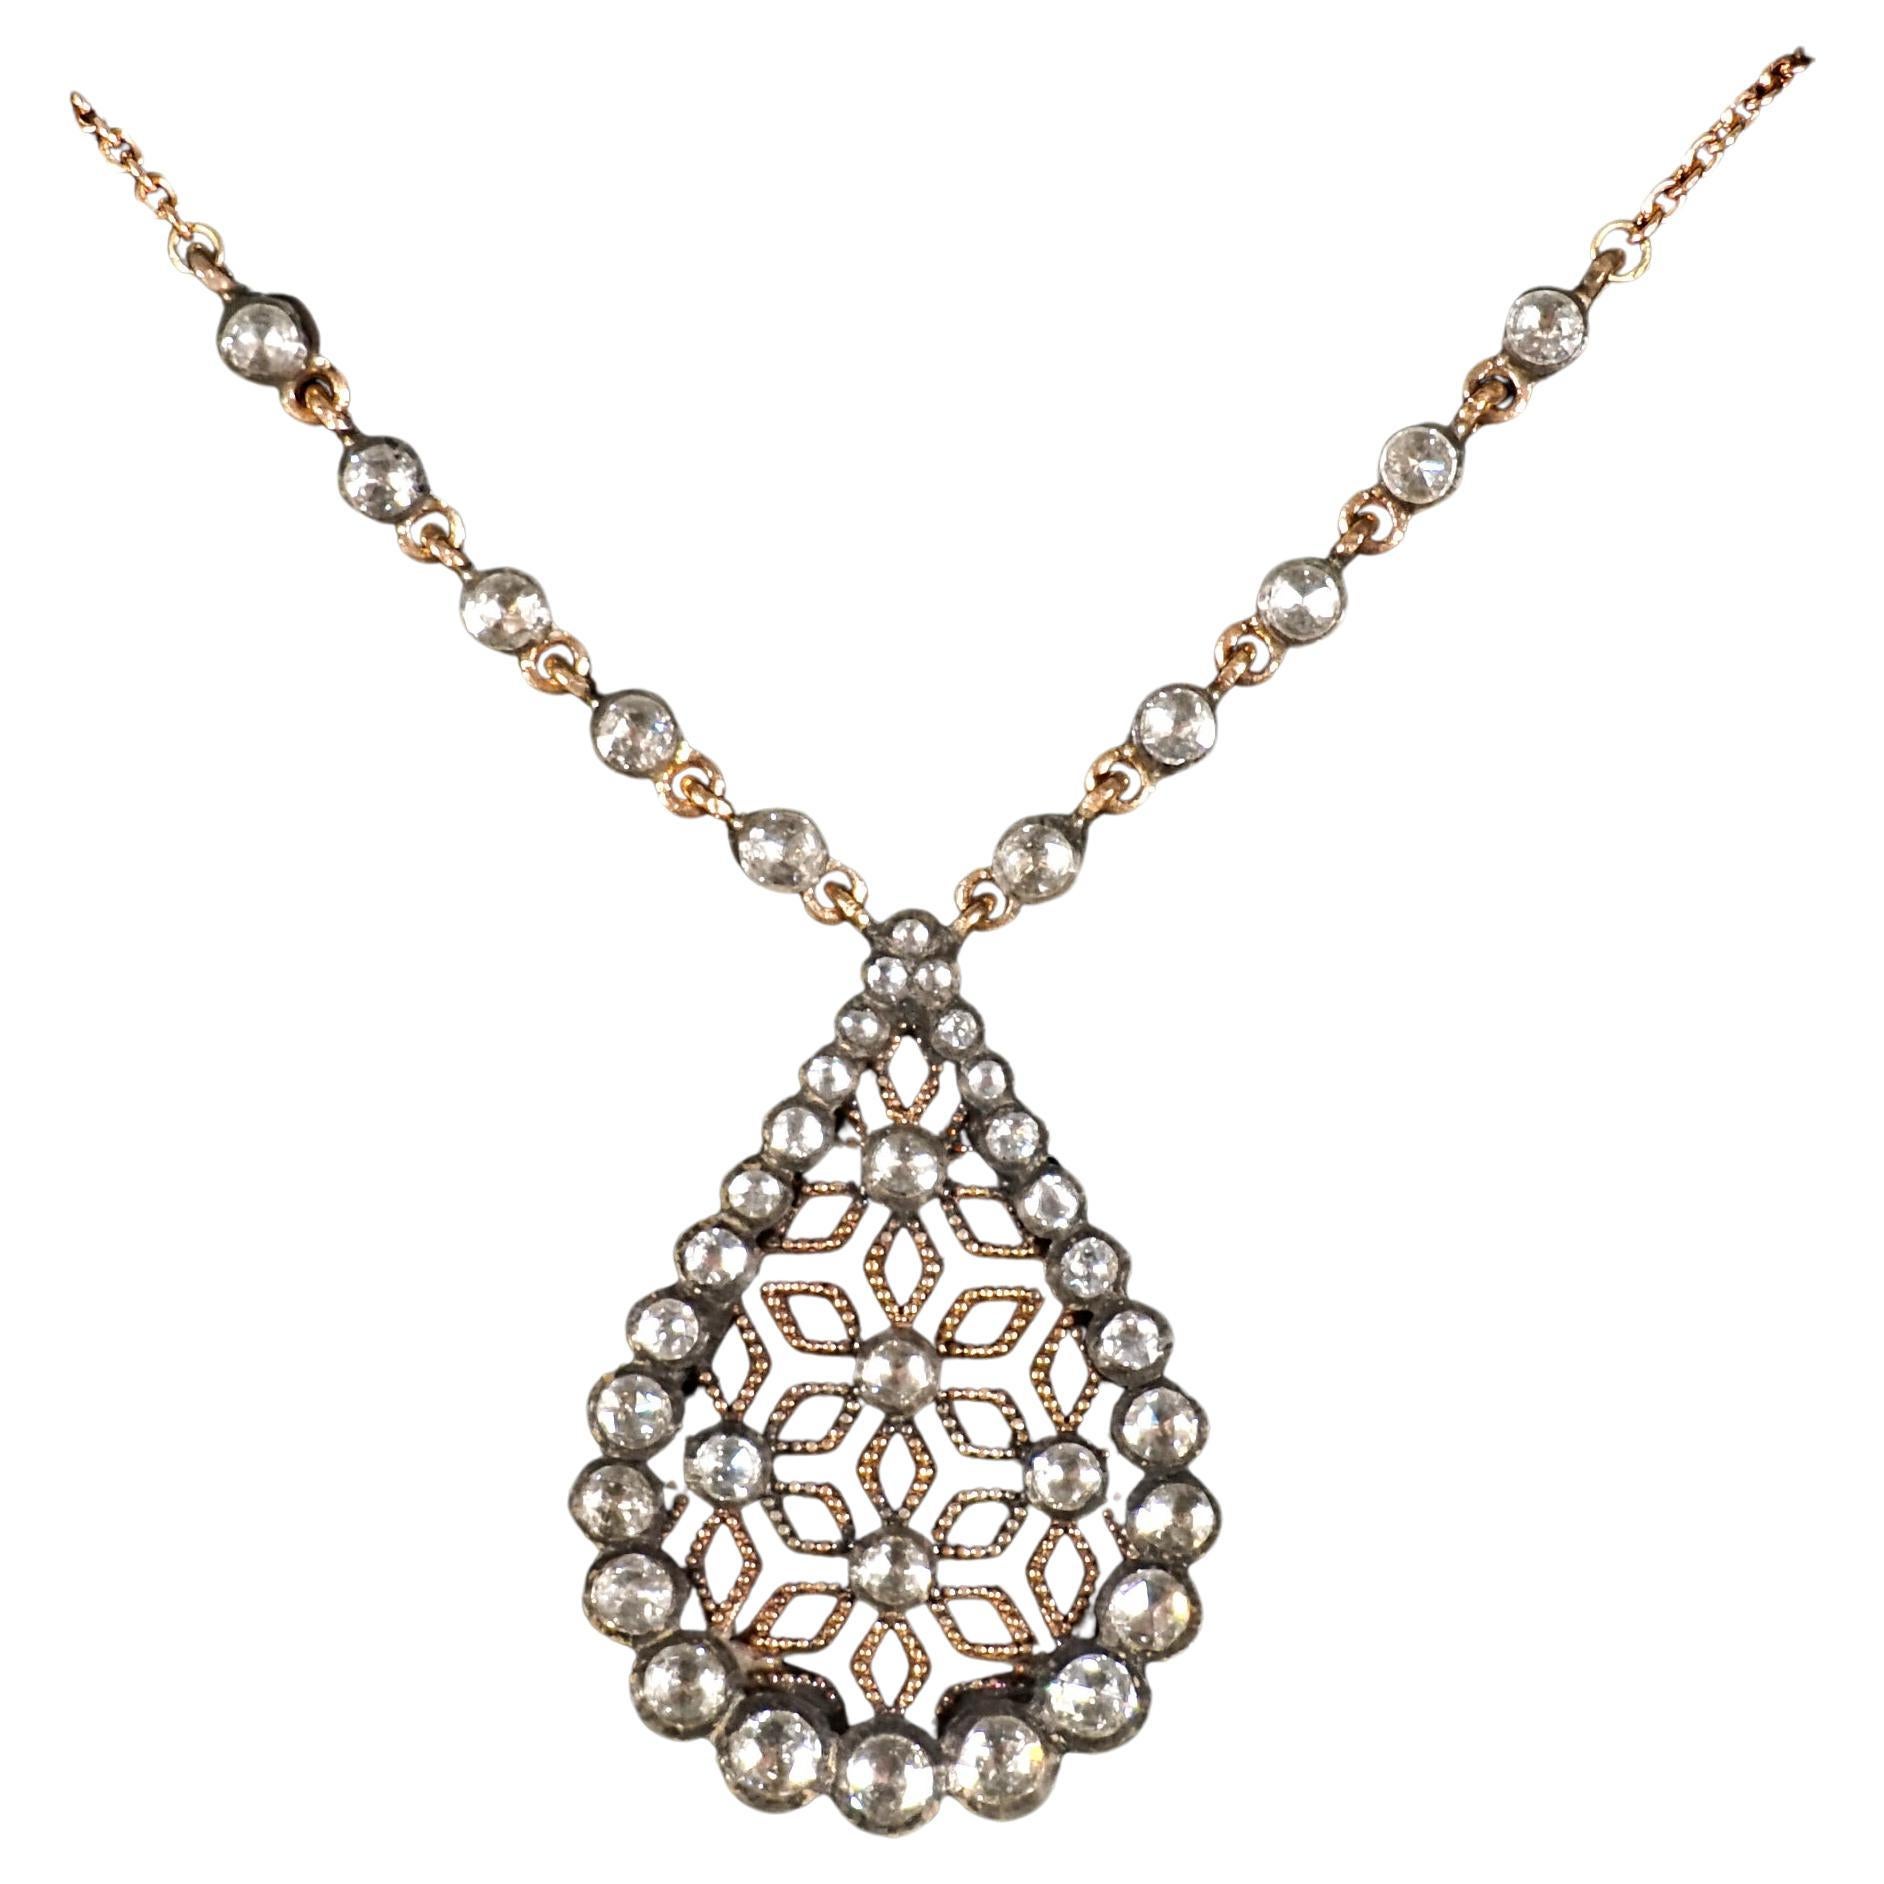 Art Nouveau Necklace With Drop-shaped Pendant, Gold & Diamonds, Vienna, Ca 1900